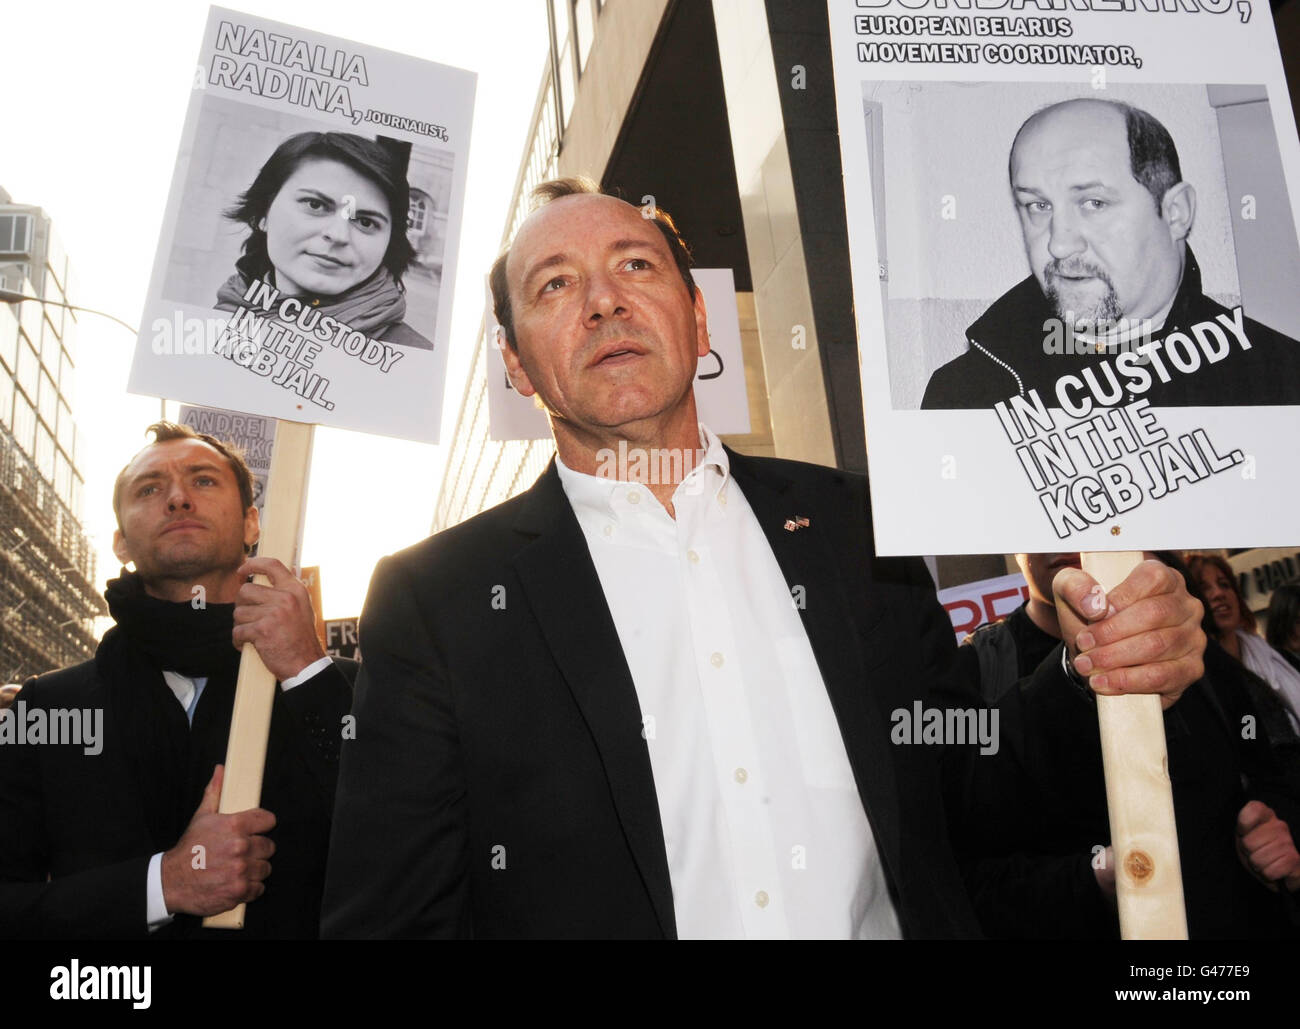 Les acteurs Jude Law et Kevin Spacey défilent à Westminster à Londres avec des manifestants, au cours d'une marche pour souligner la nécessité de la liberté d'expression en Biélorussie. Banque D'Images